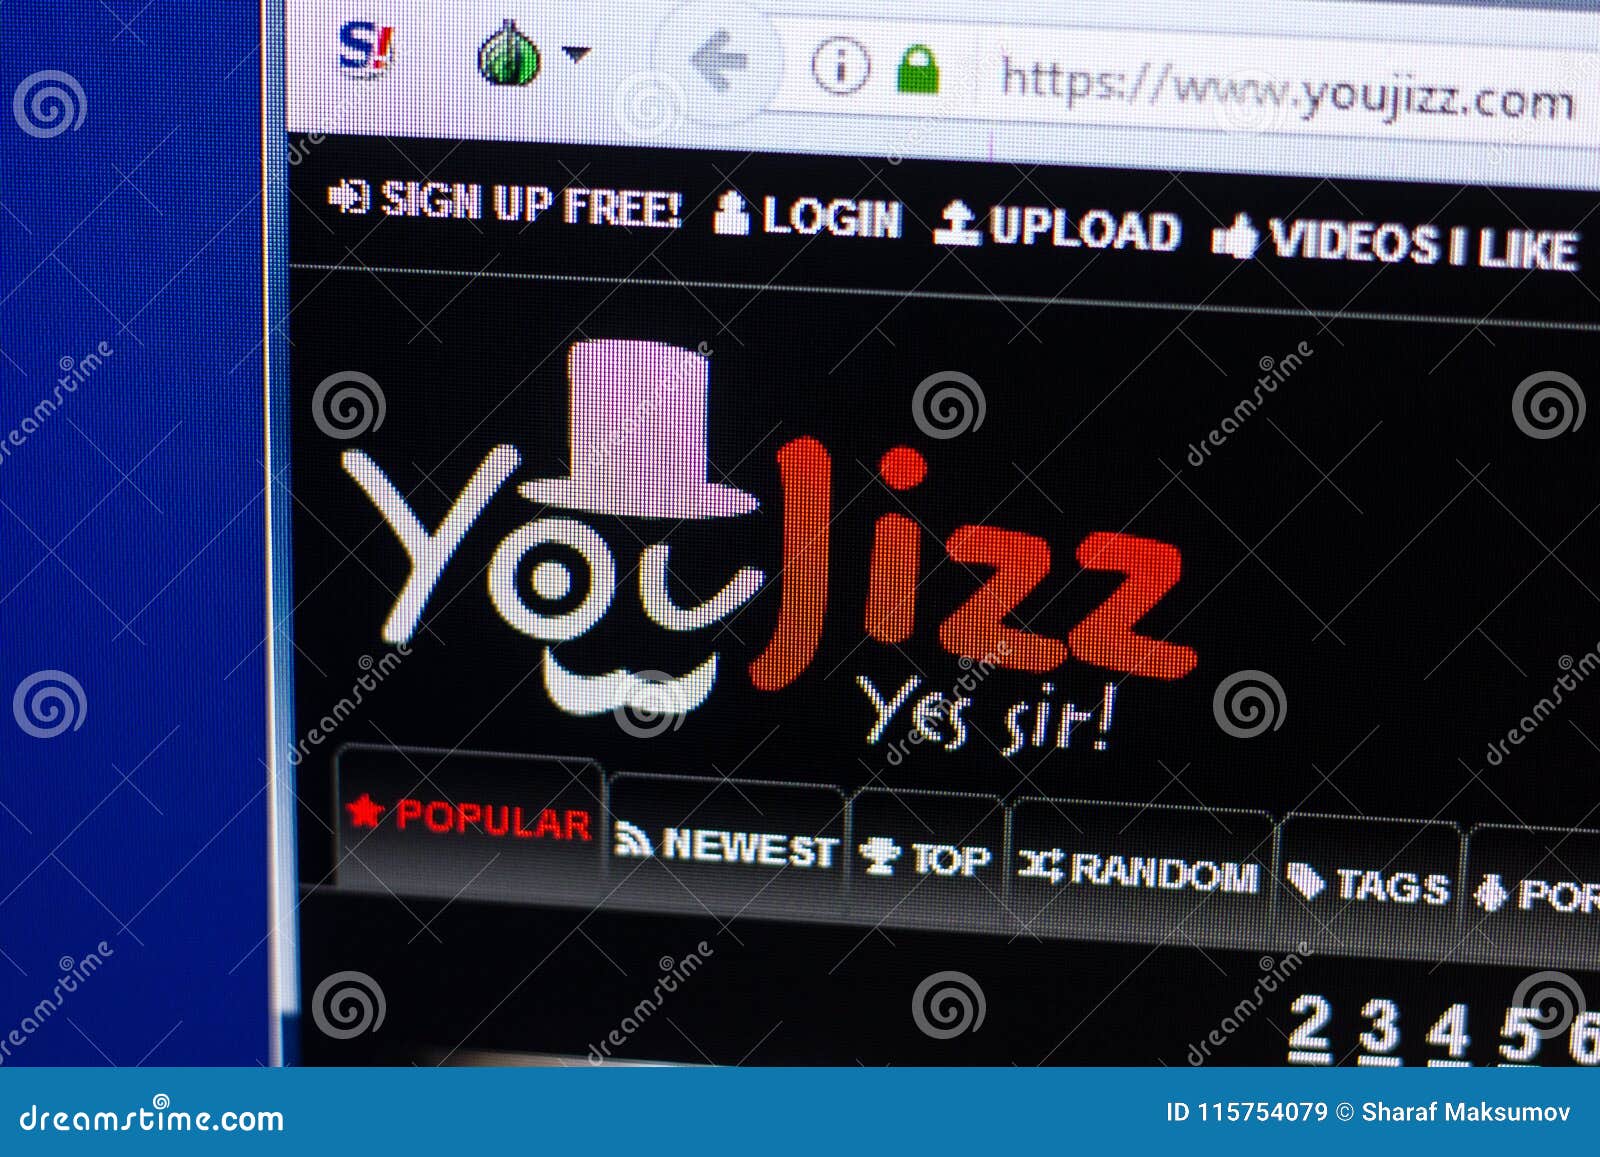 Sites Like Youjizz Com